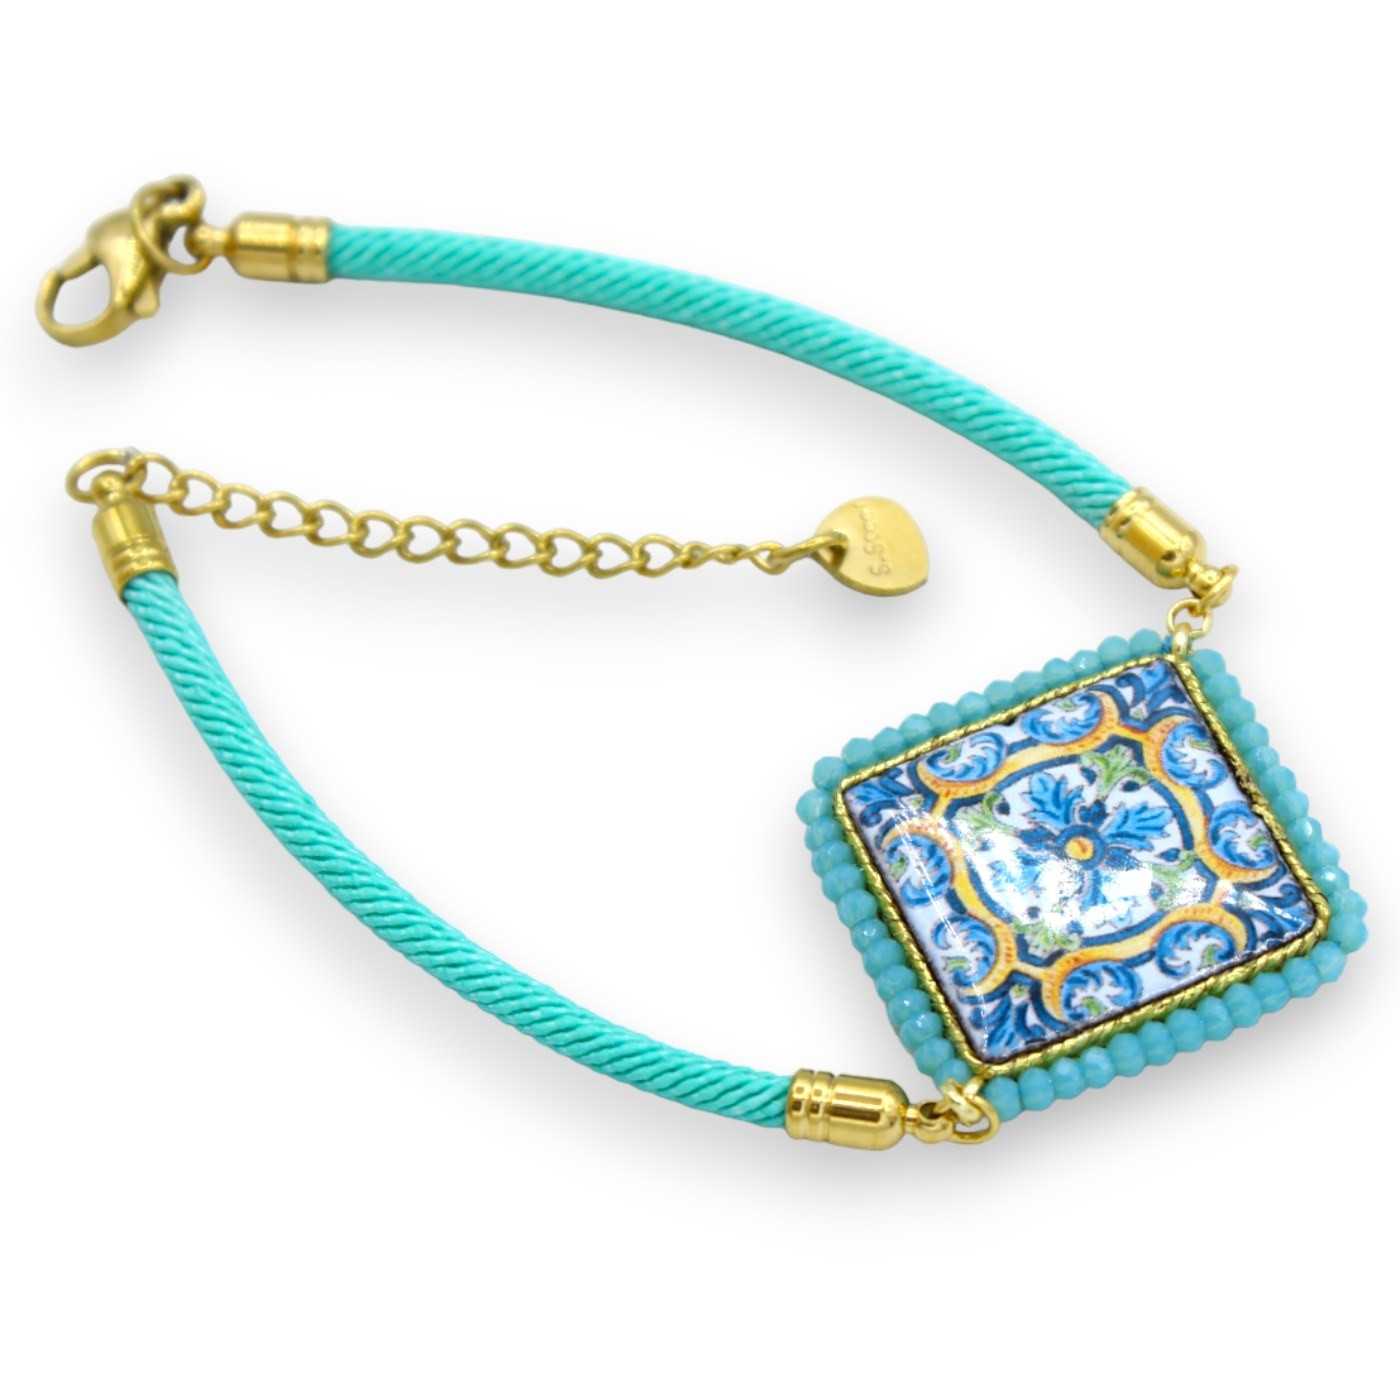 Bracelet marin fabrication artisanale en cordage Turquoise